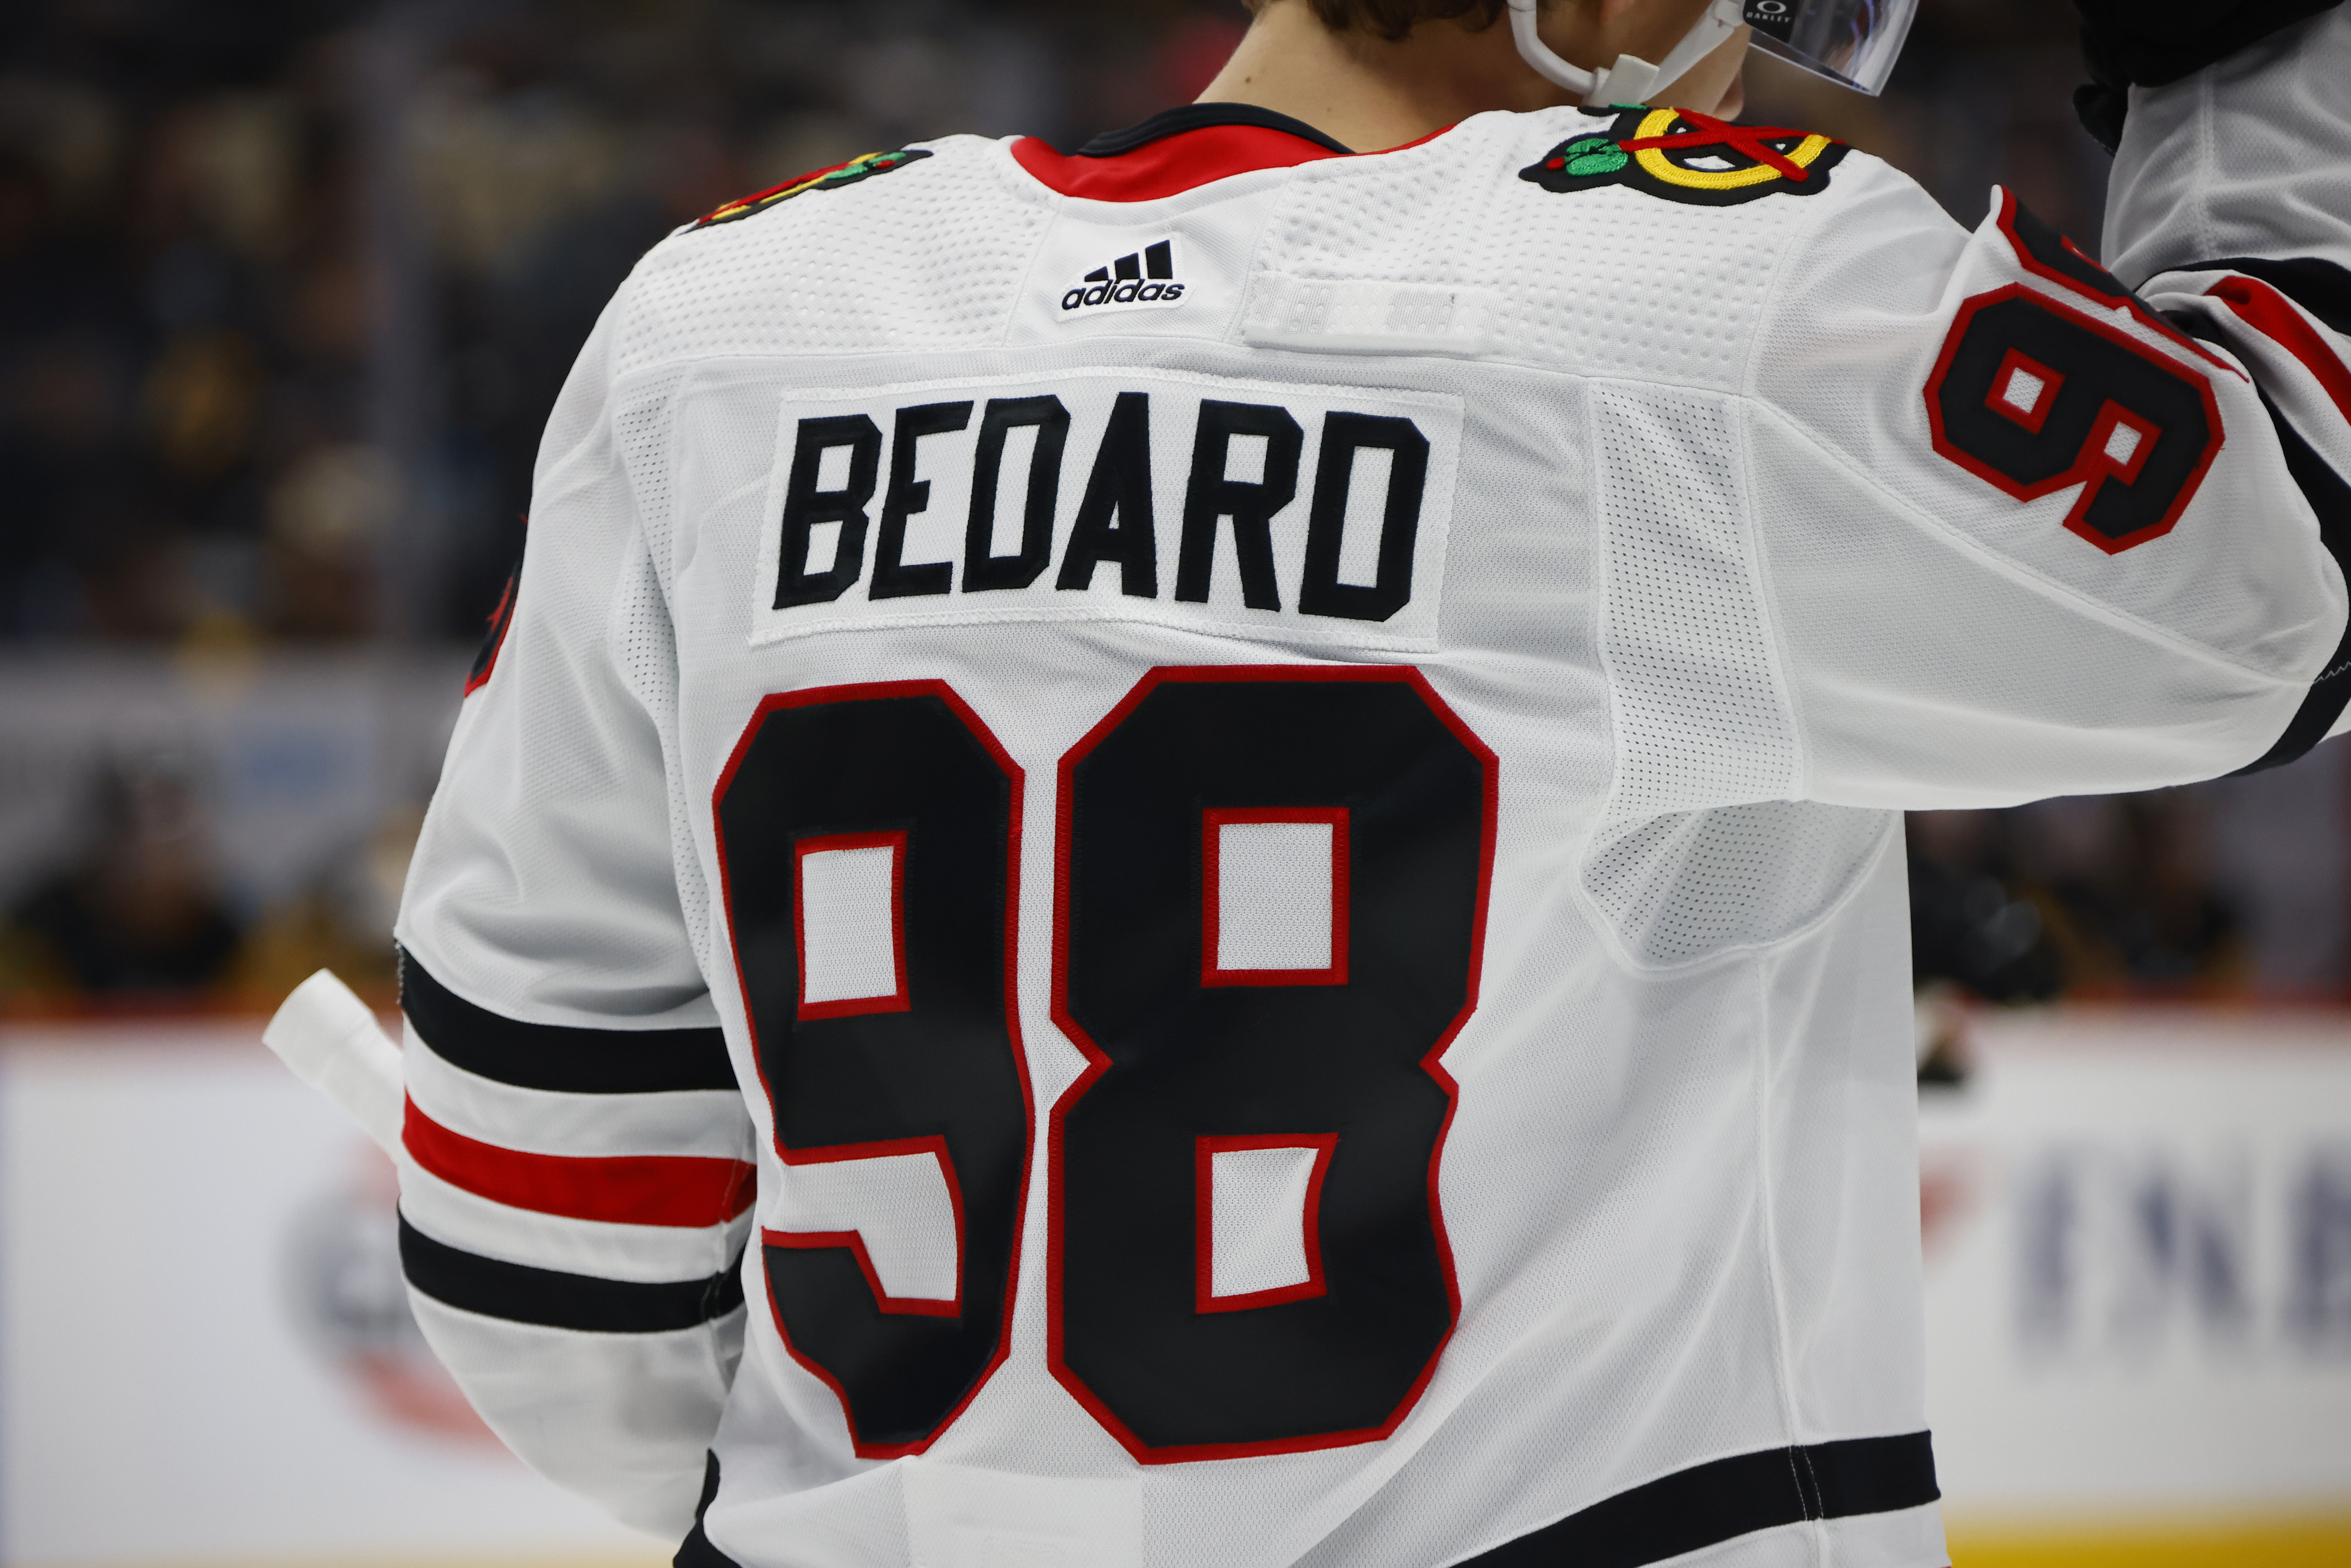 Get Connor Bedard Chicago Blackhawks jersey online: Here's how